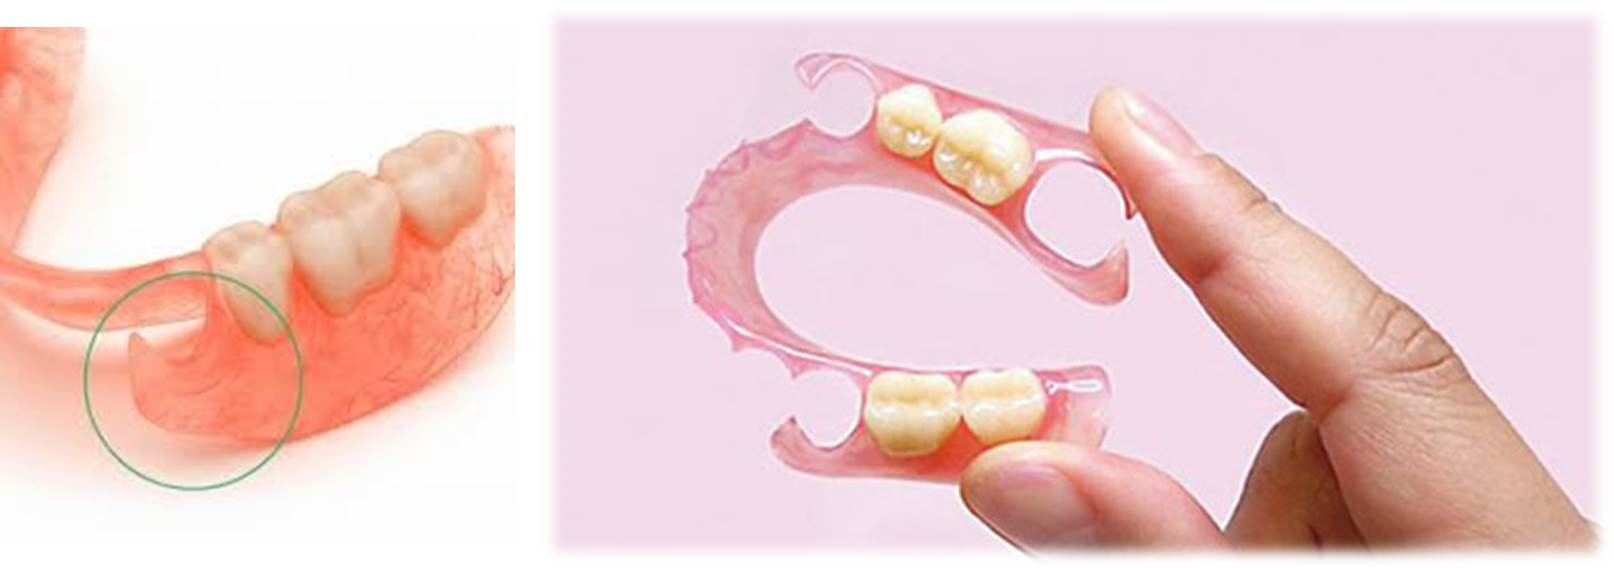 流山のグランツ歯科クリニックは「ナイロン義歯」や「スマイルデンチャー」を推奨しません。